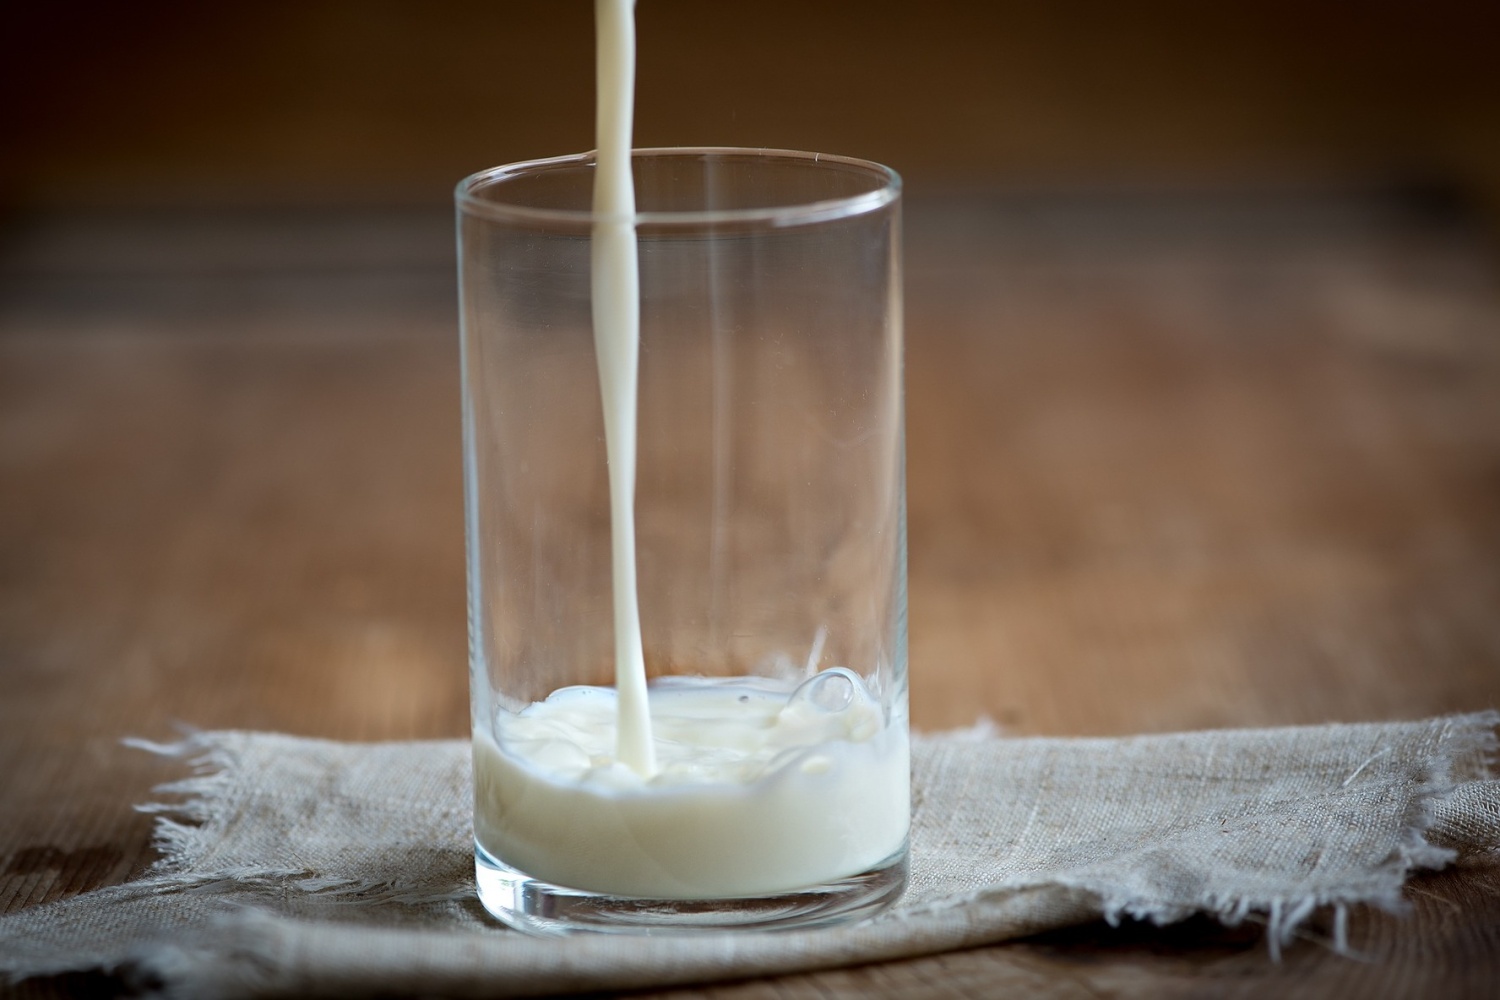 Kravské mléko vyvolává vícero nežádoucích reakcí organismu. Kromě problému s rozkládáním laktózy vyvolává často nesnášenlivost i mléčná bílkovina.